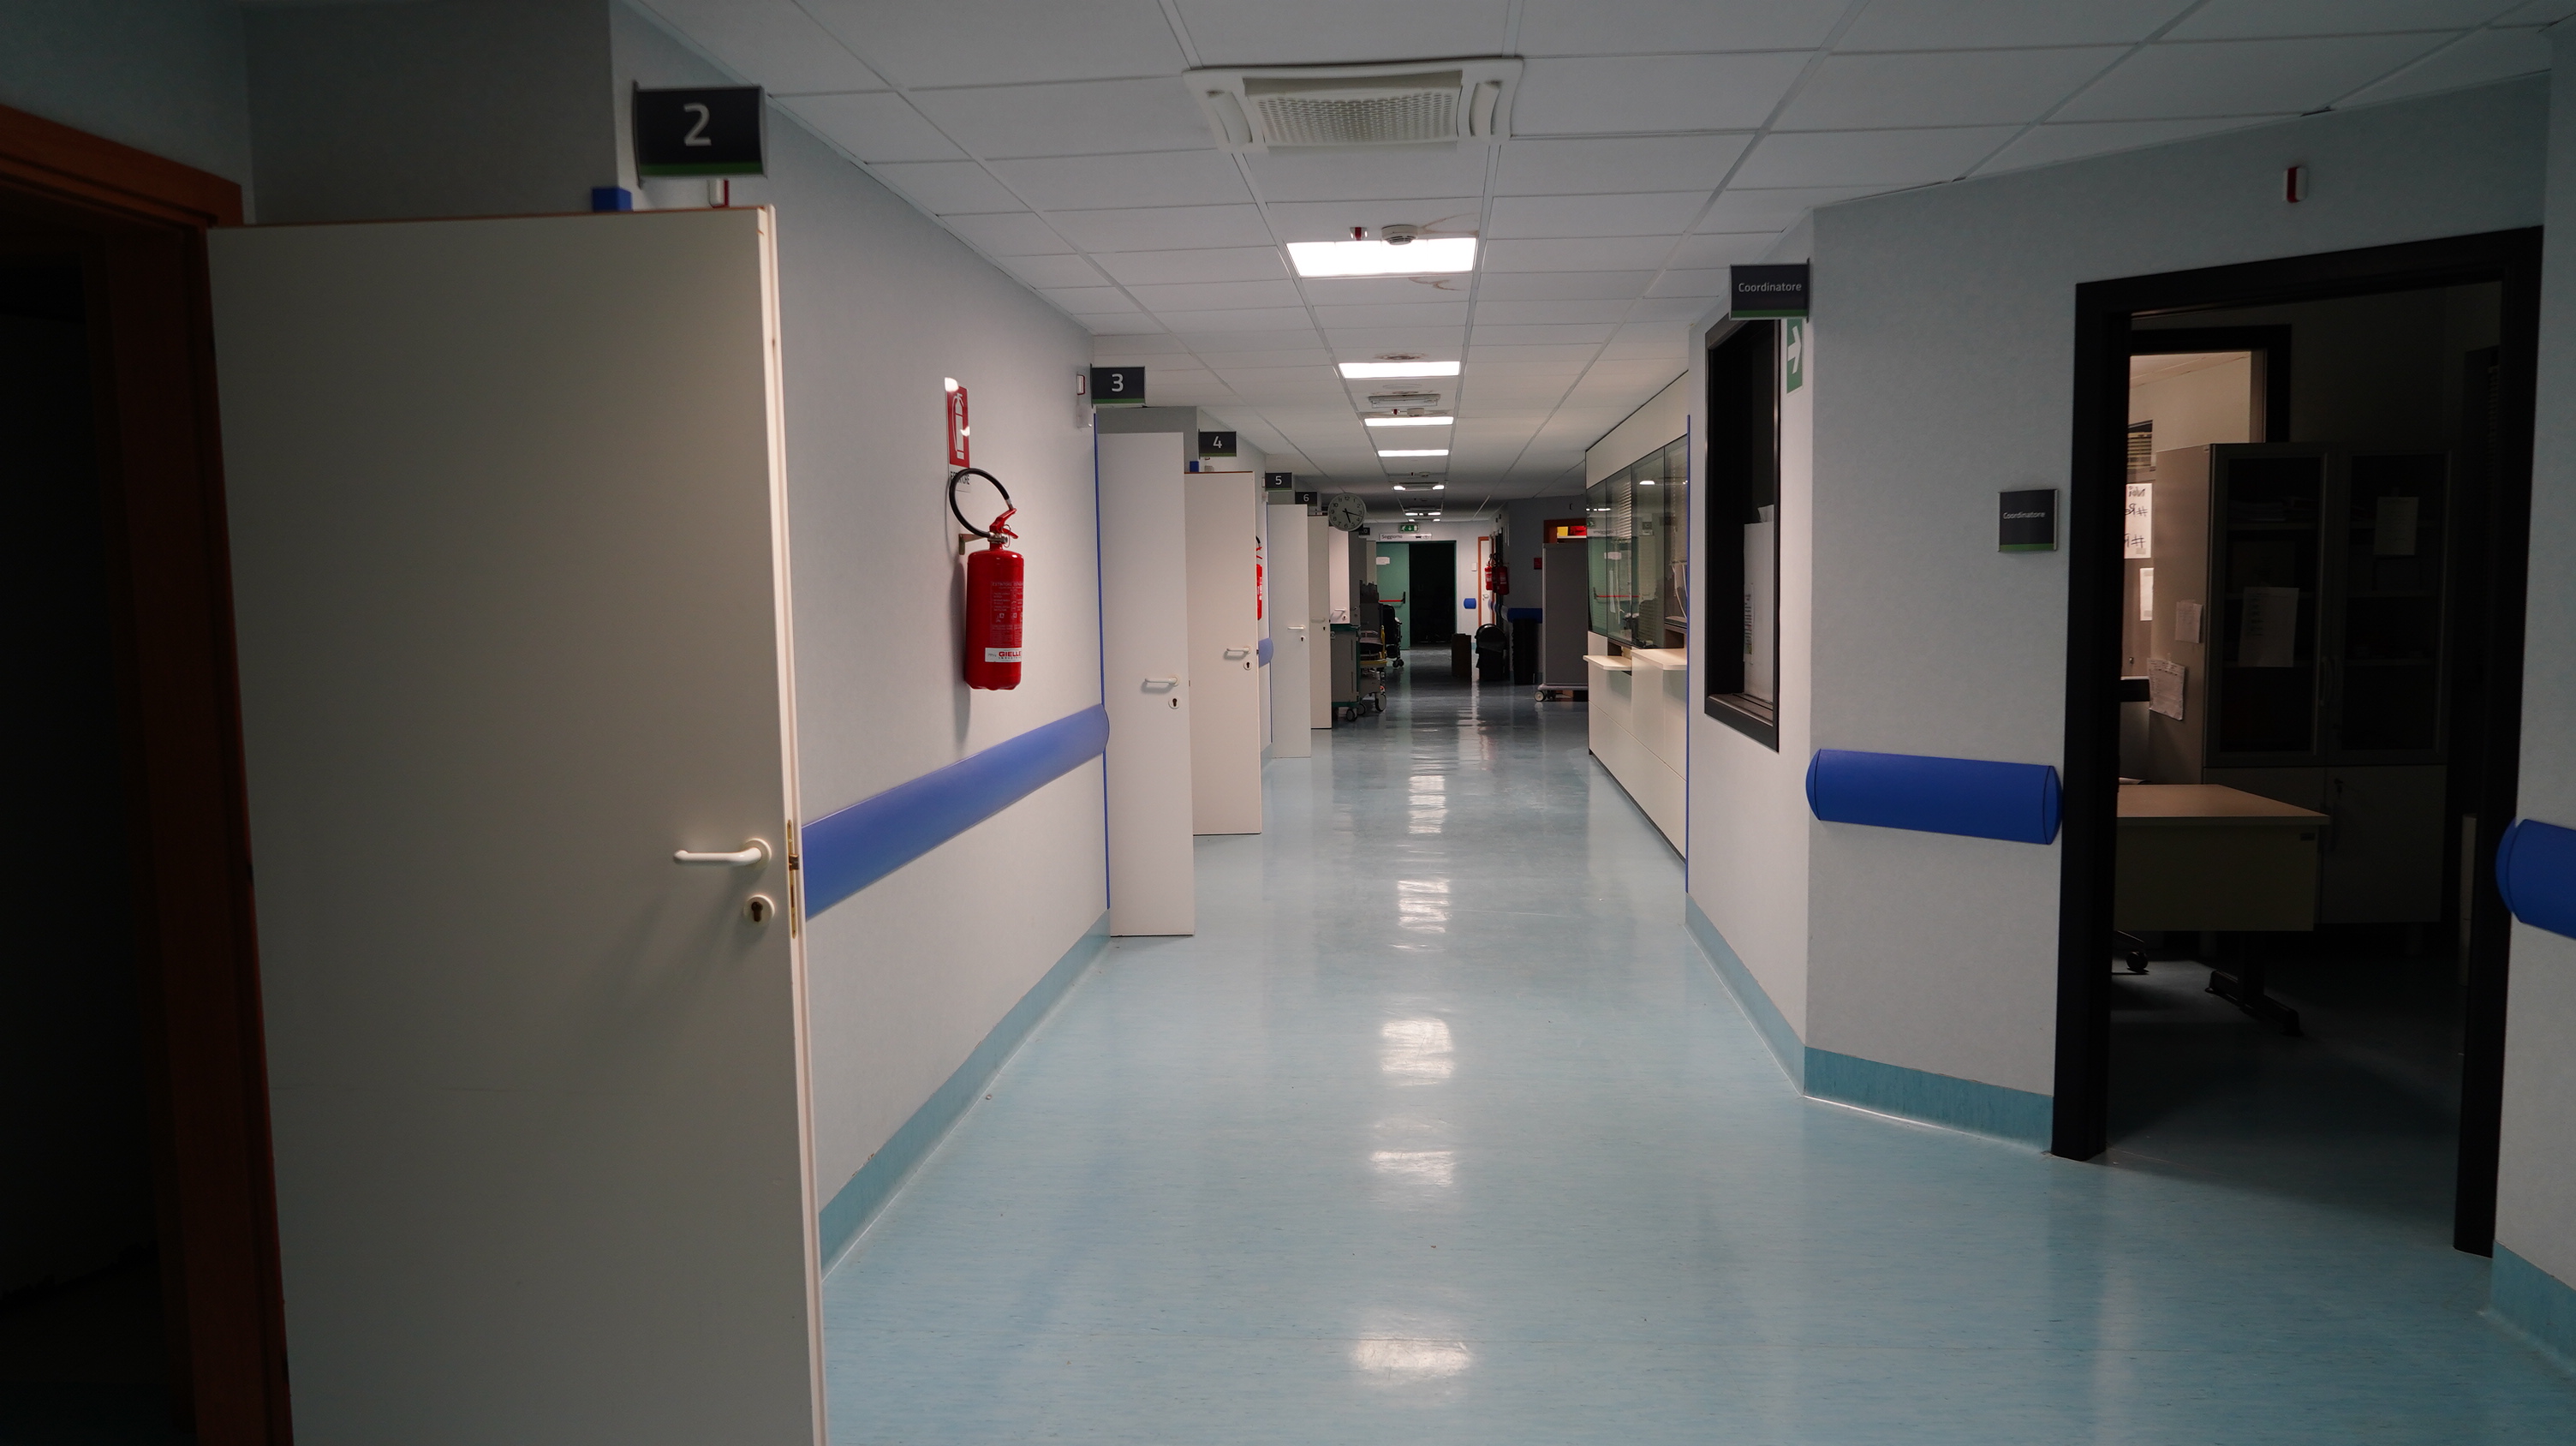 Galleria Apre il reparto Covid dell'Ospedale di Altamura: attivati 20 posti letto, ampliabili sino a 60 - Diapositiva 3 di 9